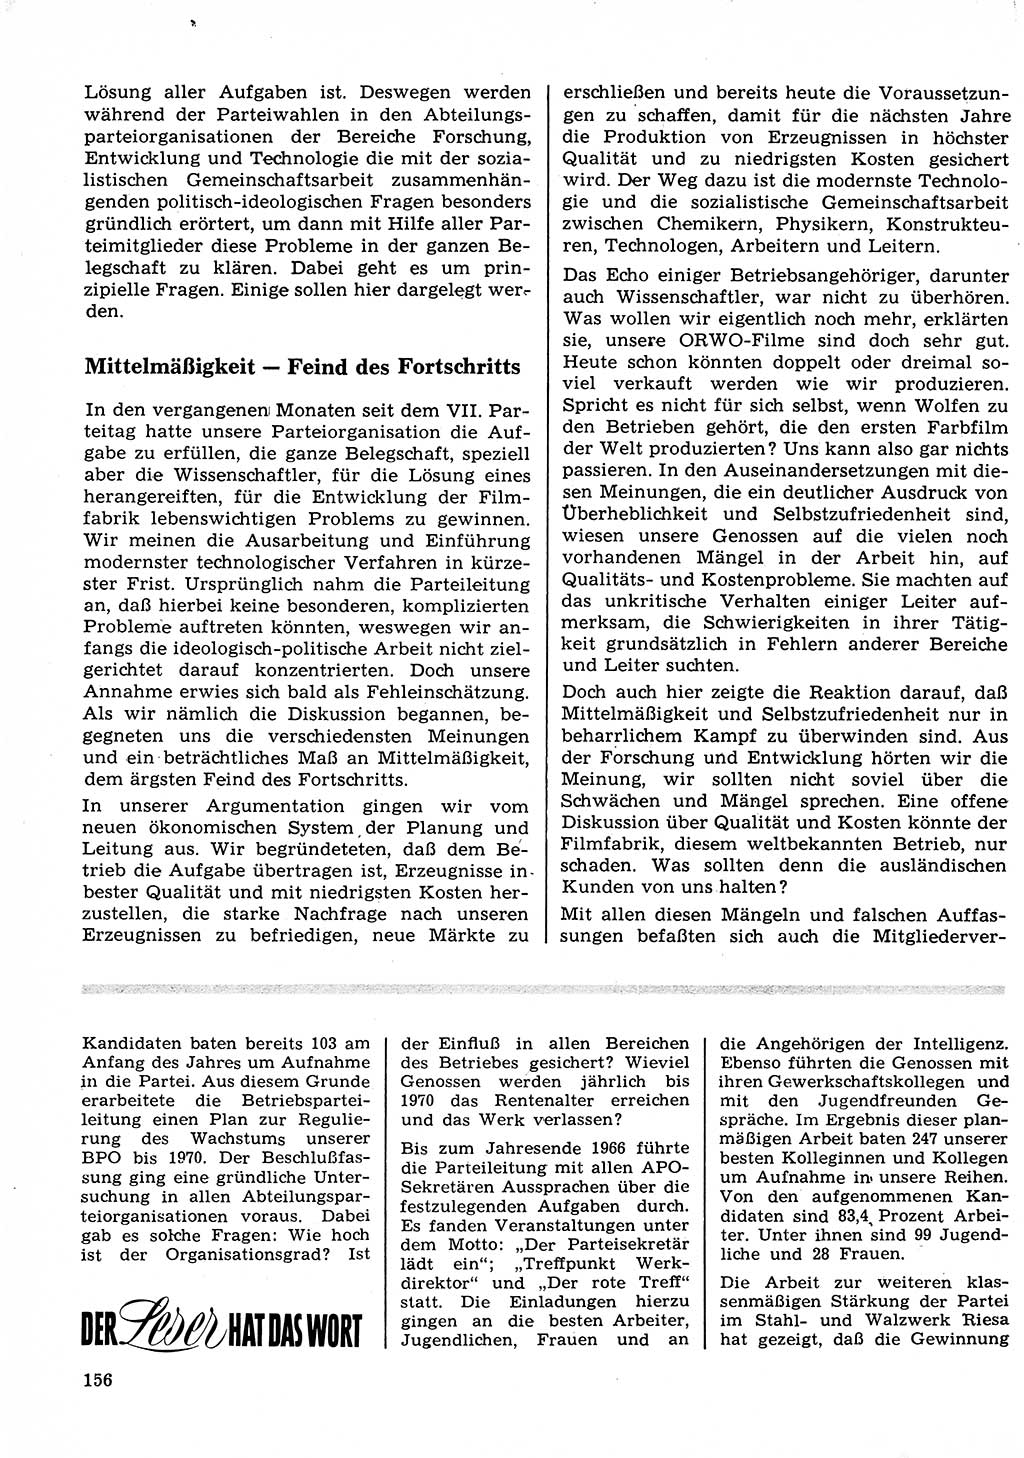 Neuer Weg (NW), Organ des Zentralkomitees (ZK) der SED (Sozialistische Einheitspartei Deutschlands) für Fragen des Parteilebens, 23. Jahrgang [Deutsche Demokratische Republik (DDR)] 1968, Seite 156 (NW ZK SED DDR 1968, S. 156)